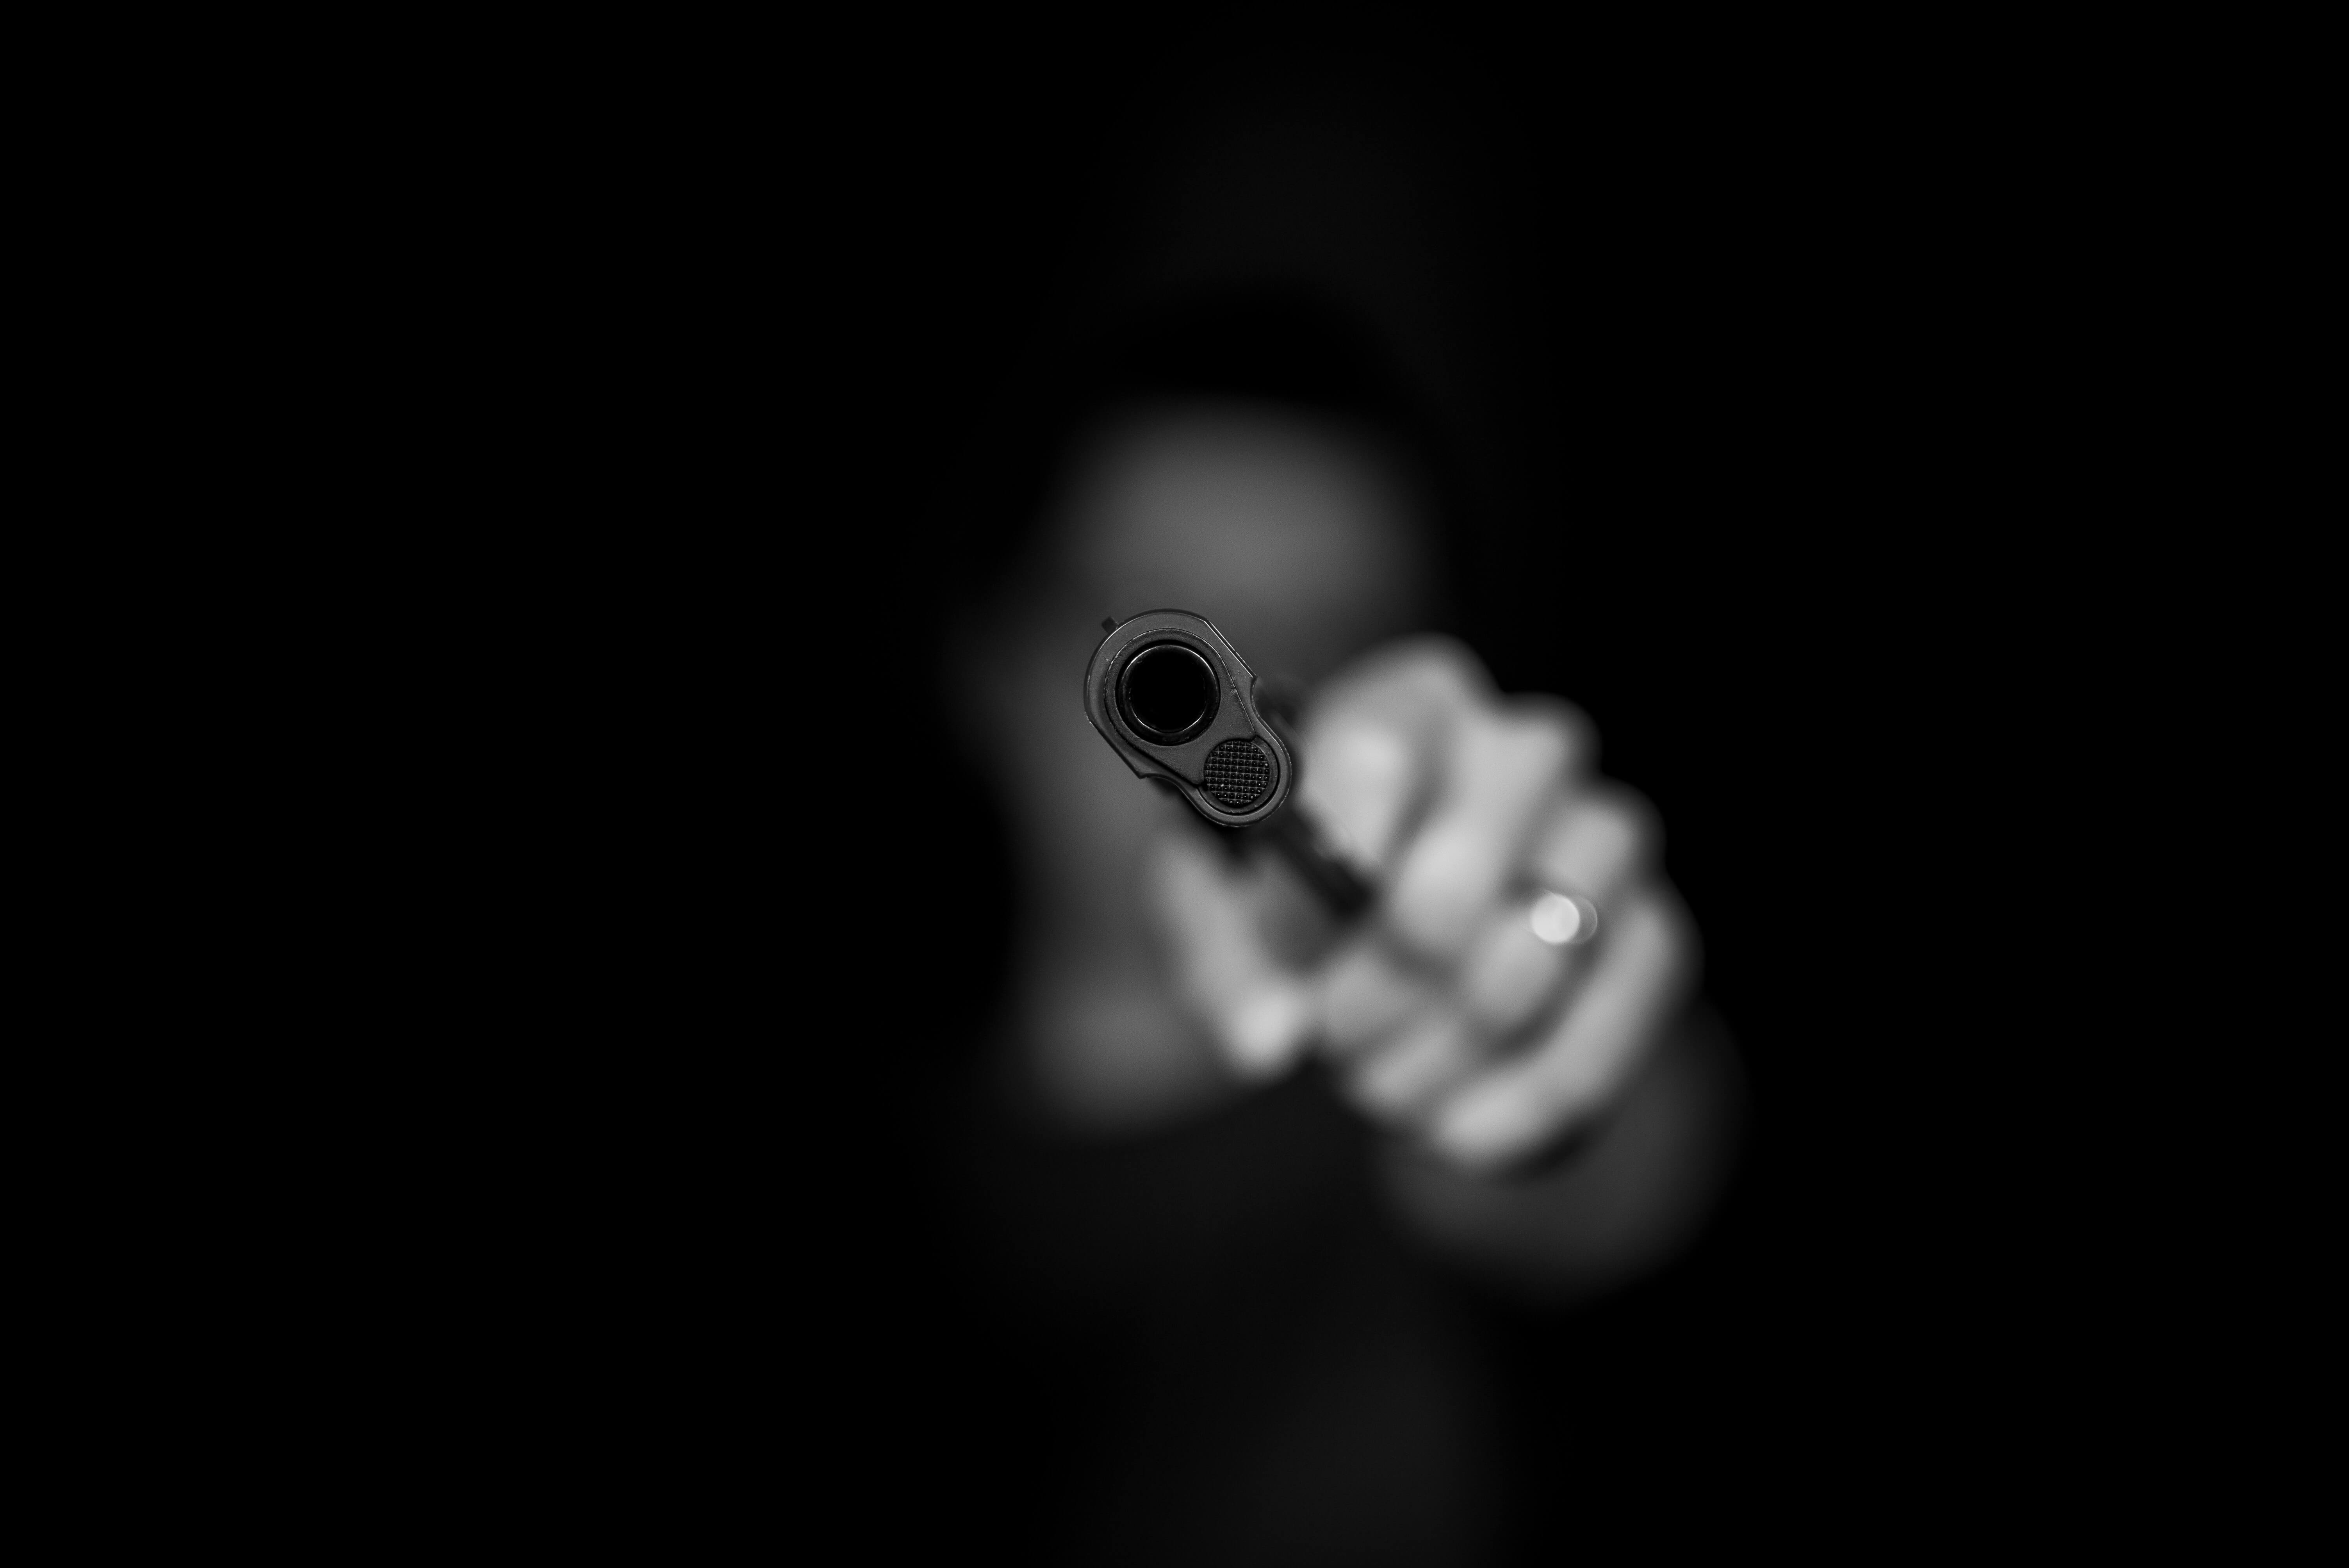 blurry man in shadows pointing a gun